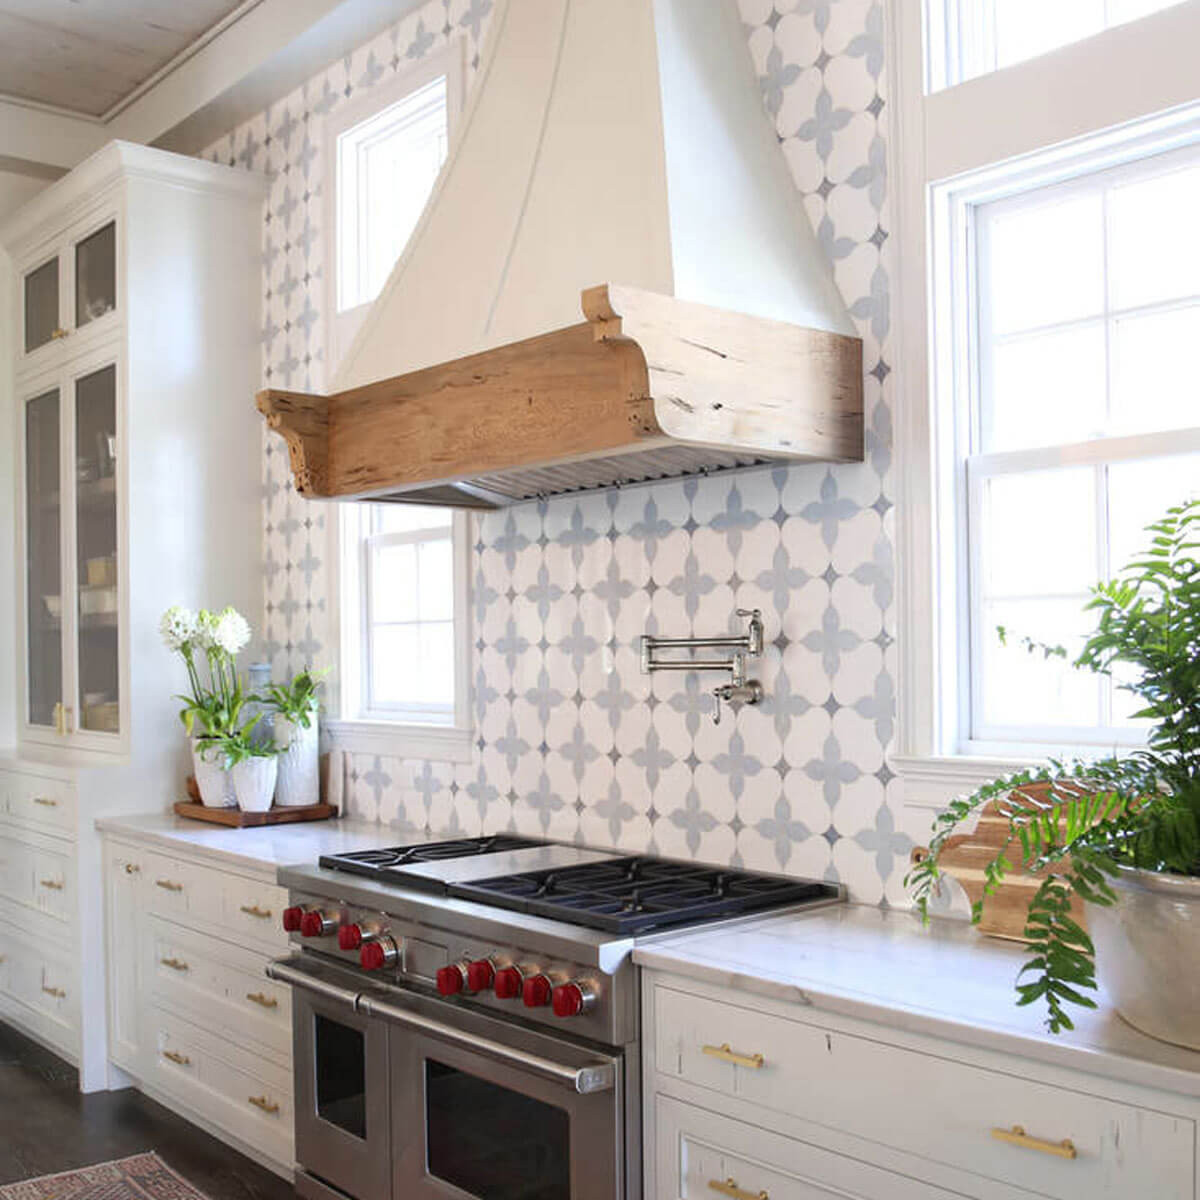 Tile Backsplash Kitchen Ideas
 14 Showstopping Tile Backsplash Ideas To Suit Any Style